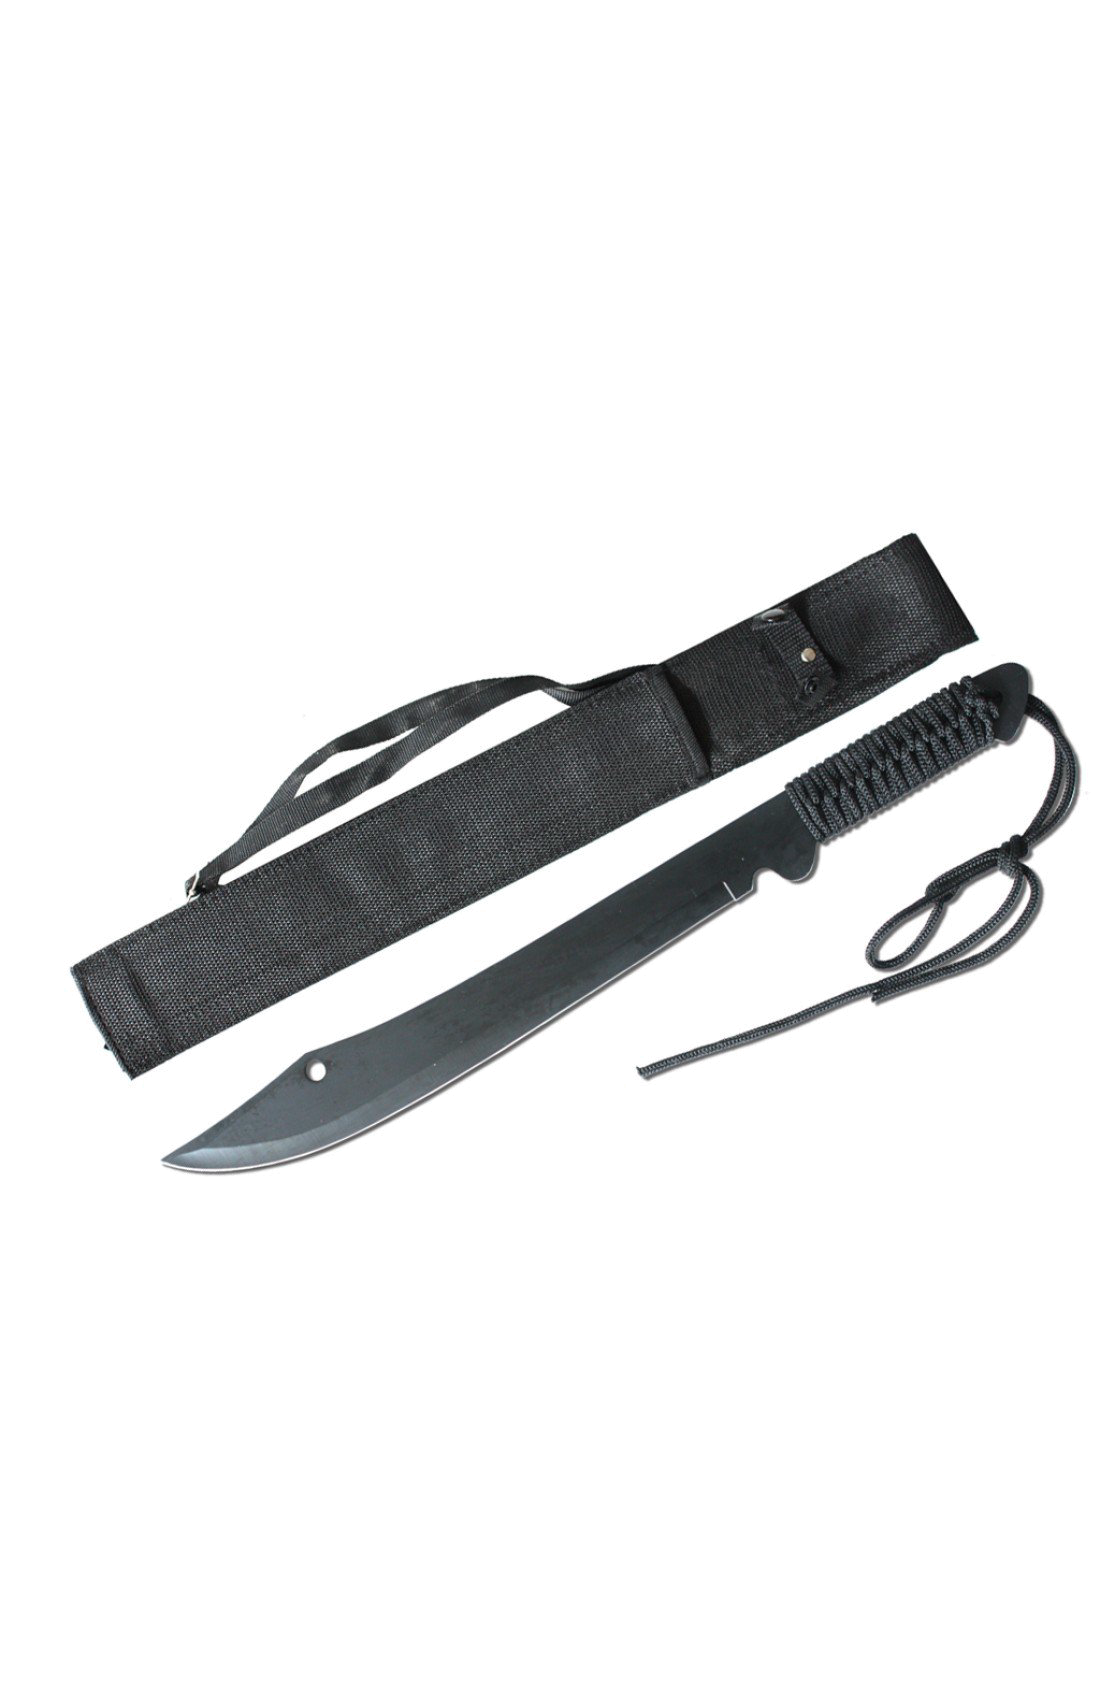 product image for Rtek Machete Fixed Blade Black Full Tang